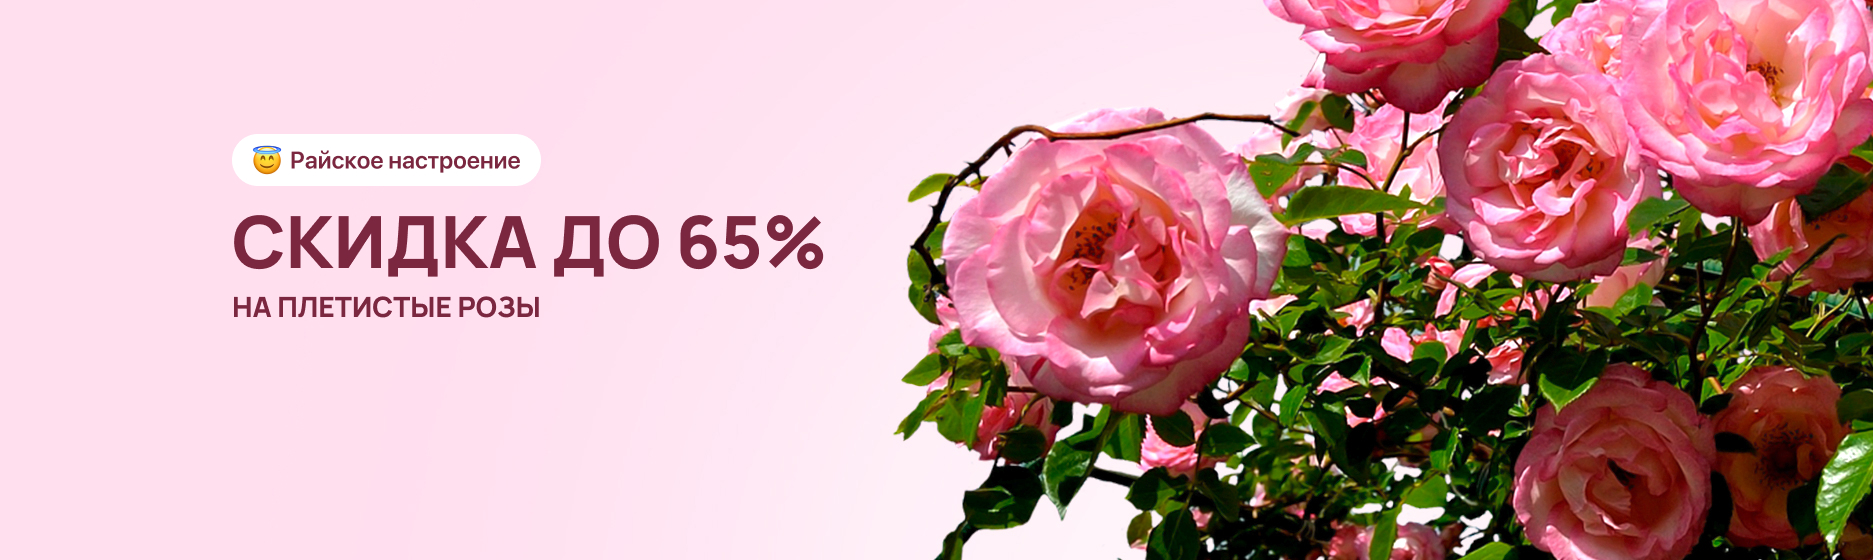 Плетистые розы со скидкой до 65%